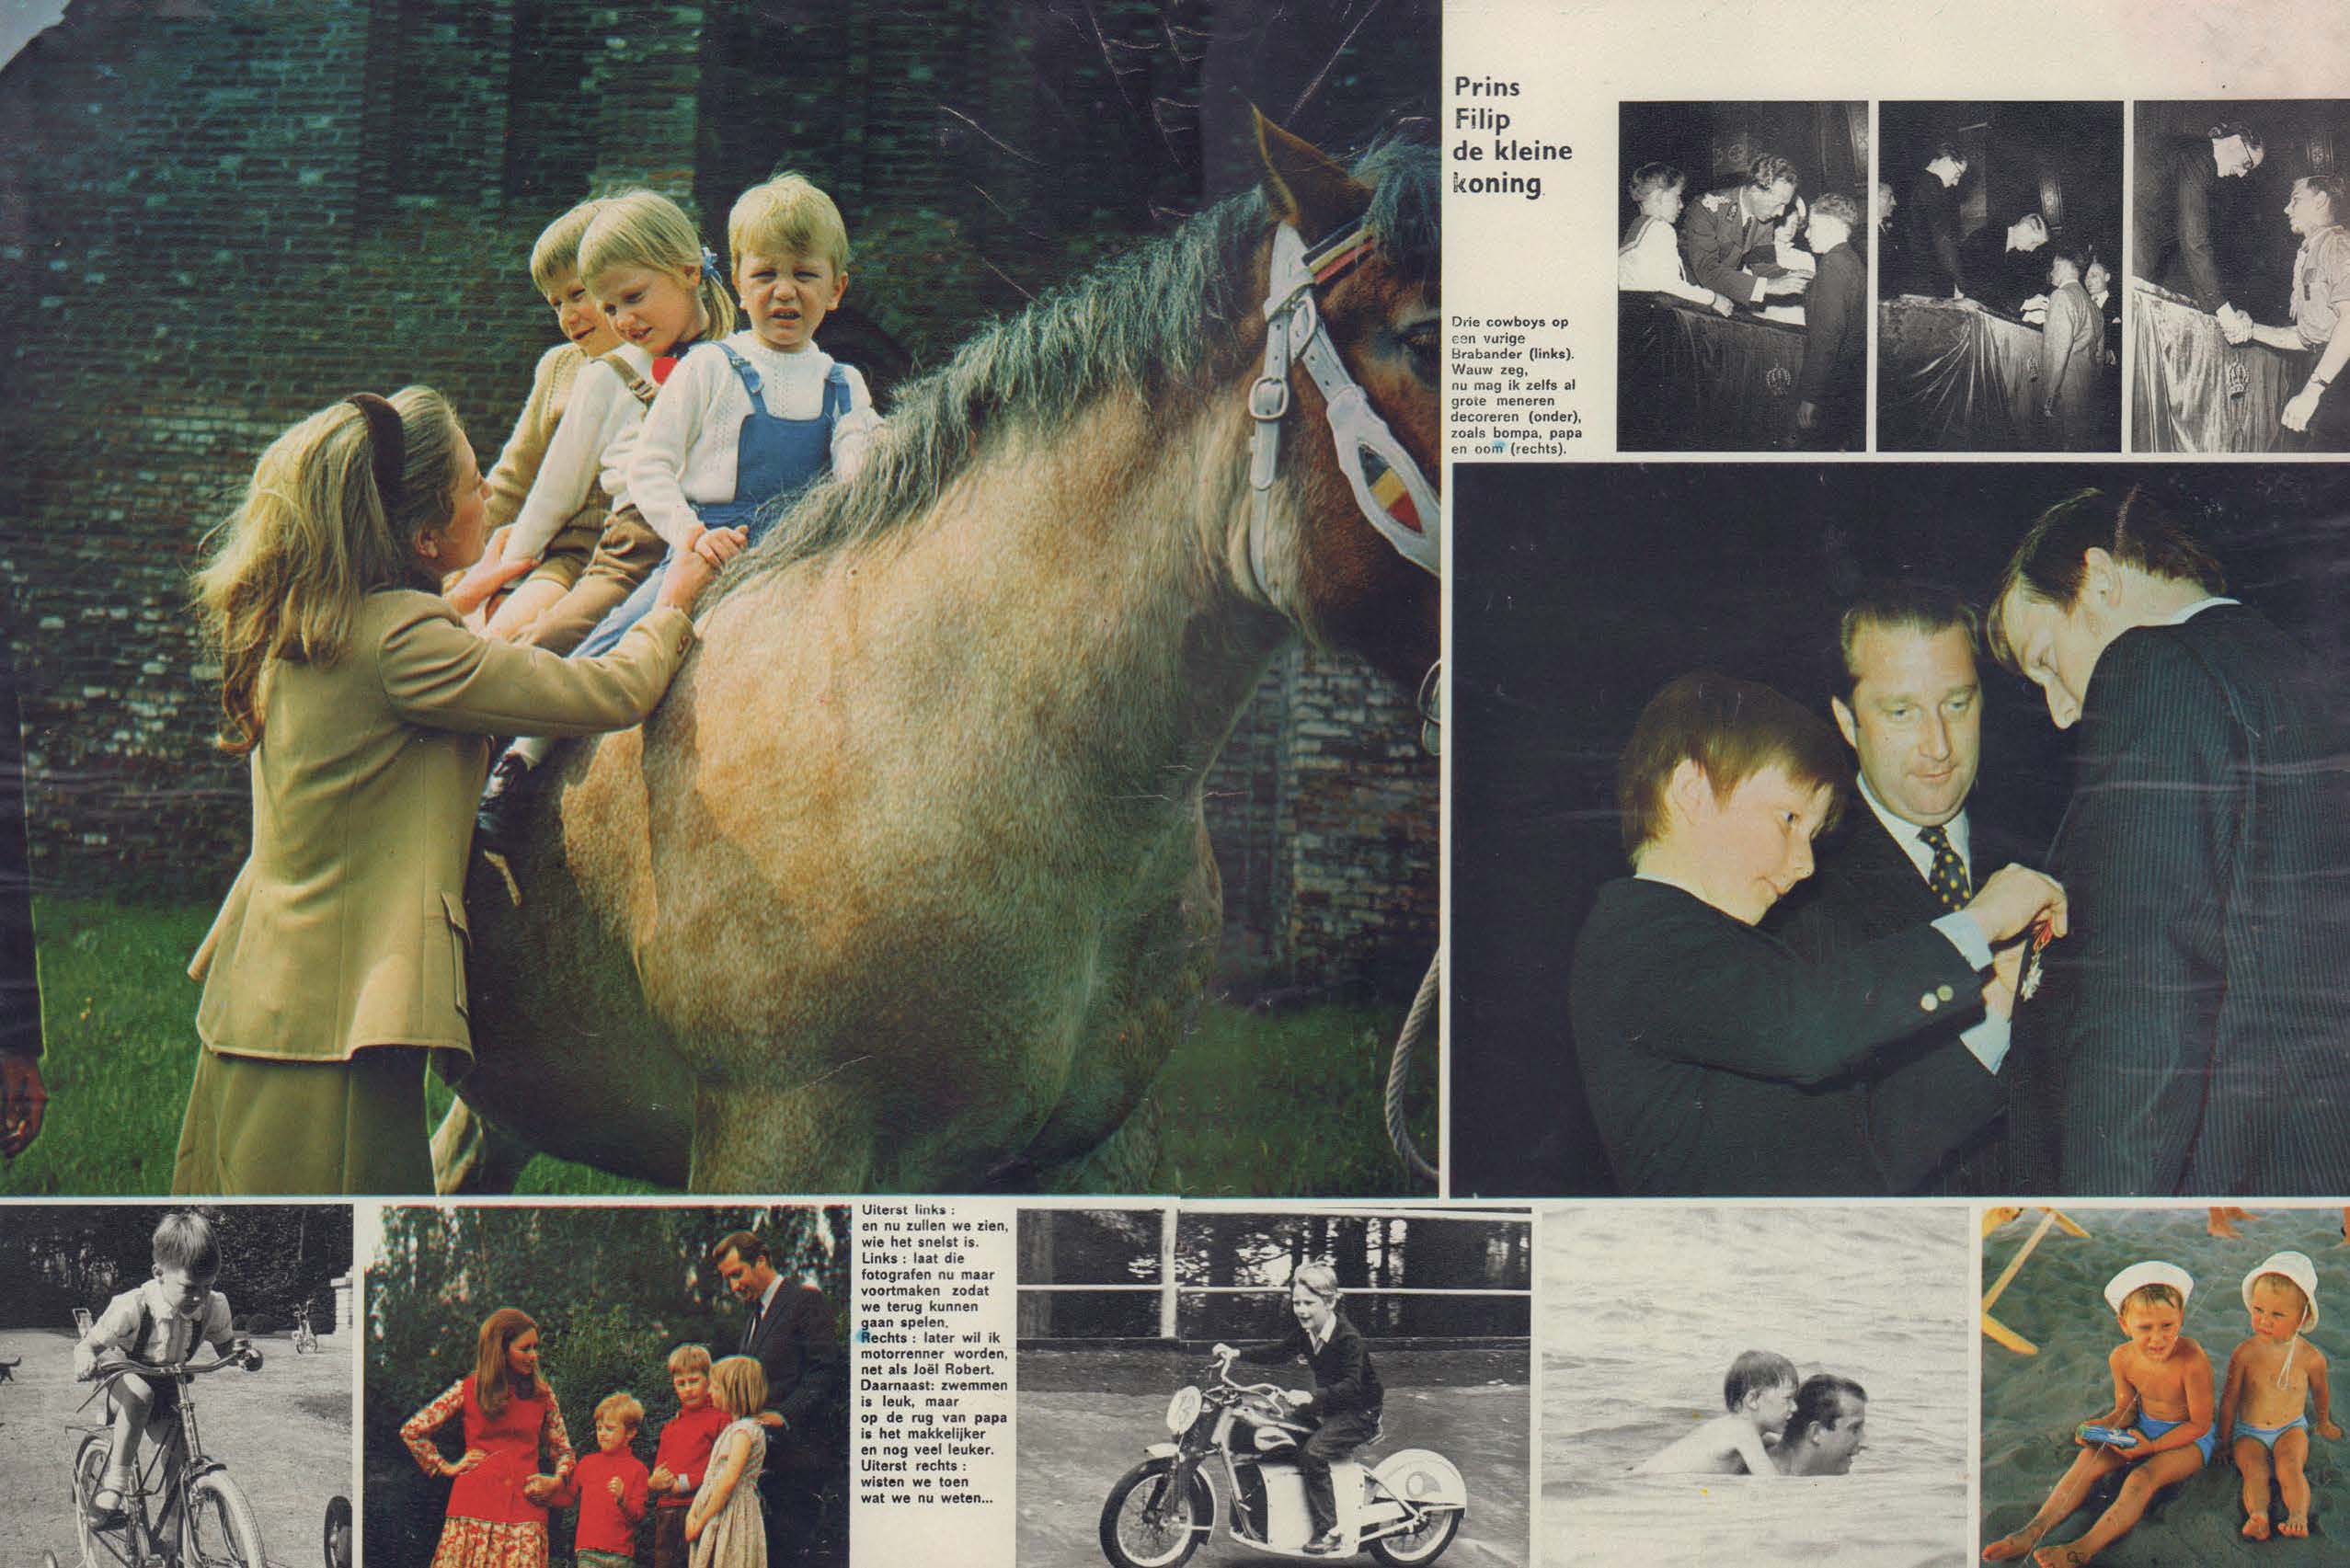 King Philip of Belgium with siblings on horseback